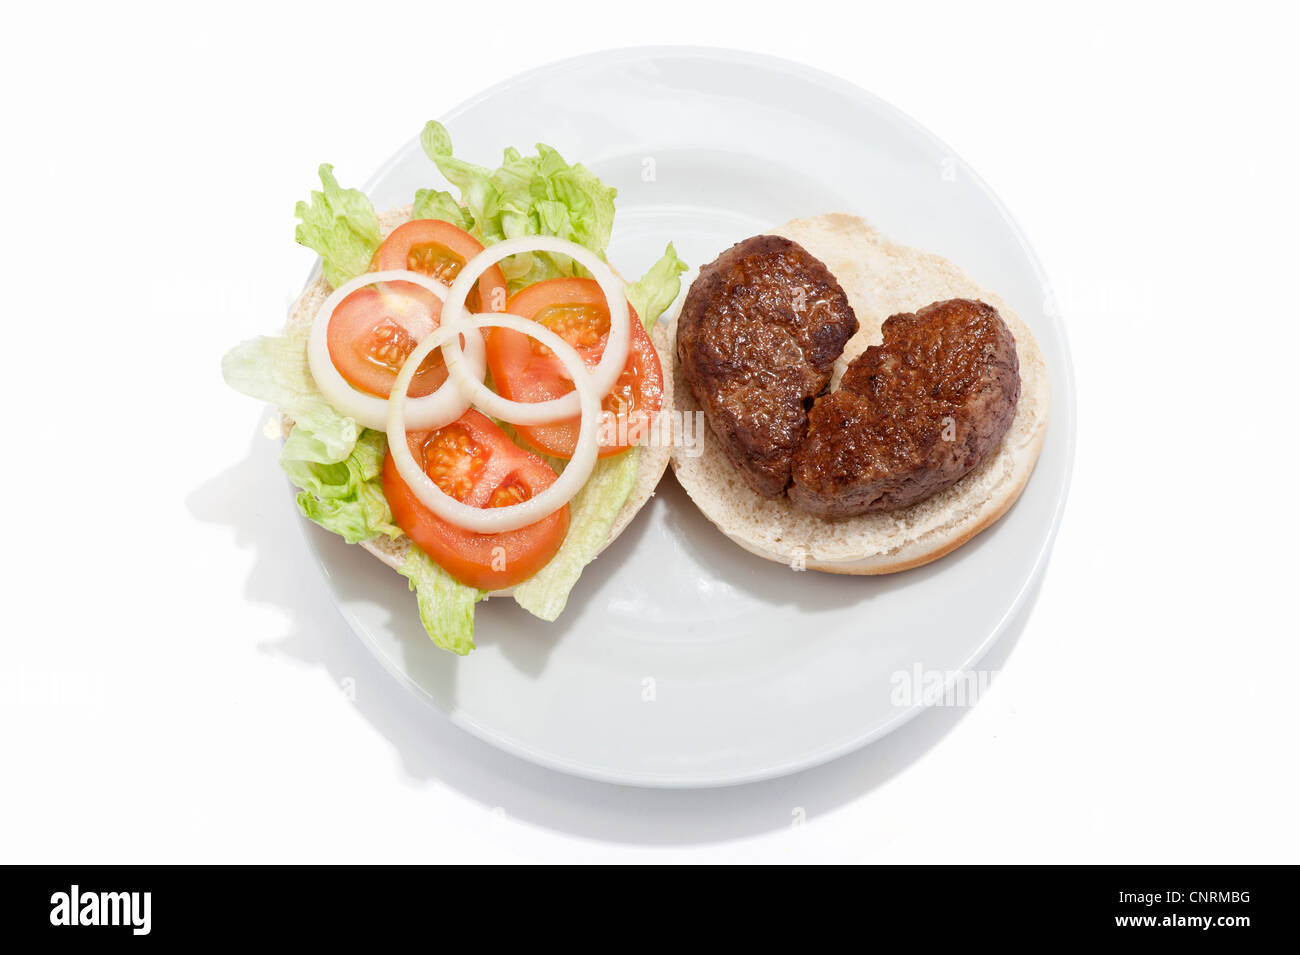 Ein gebrochenes Herz geformt Beef-Burger auf einem Brötchen mit Tomatensauce und einem Beilagensalat Stockfoto